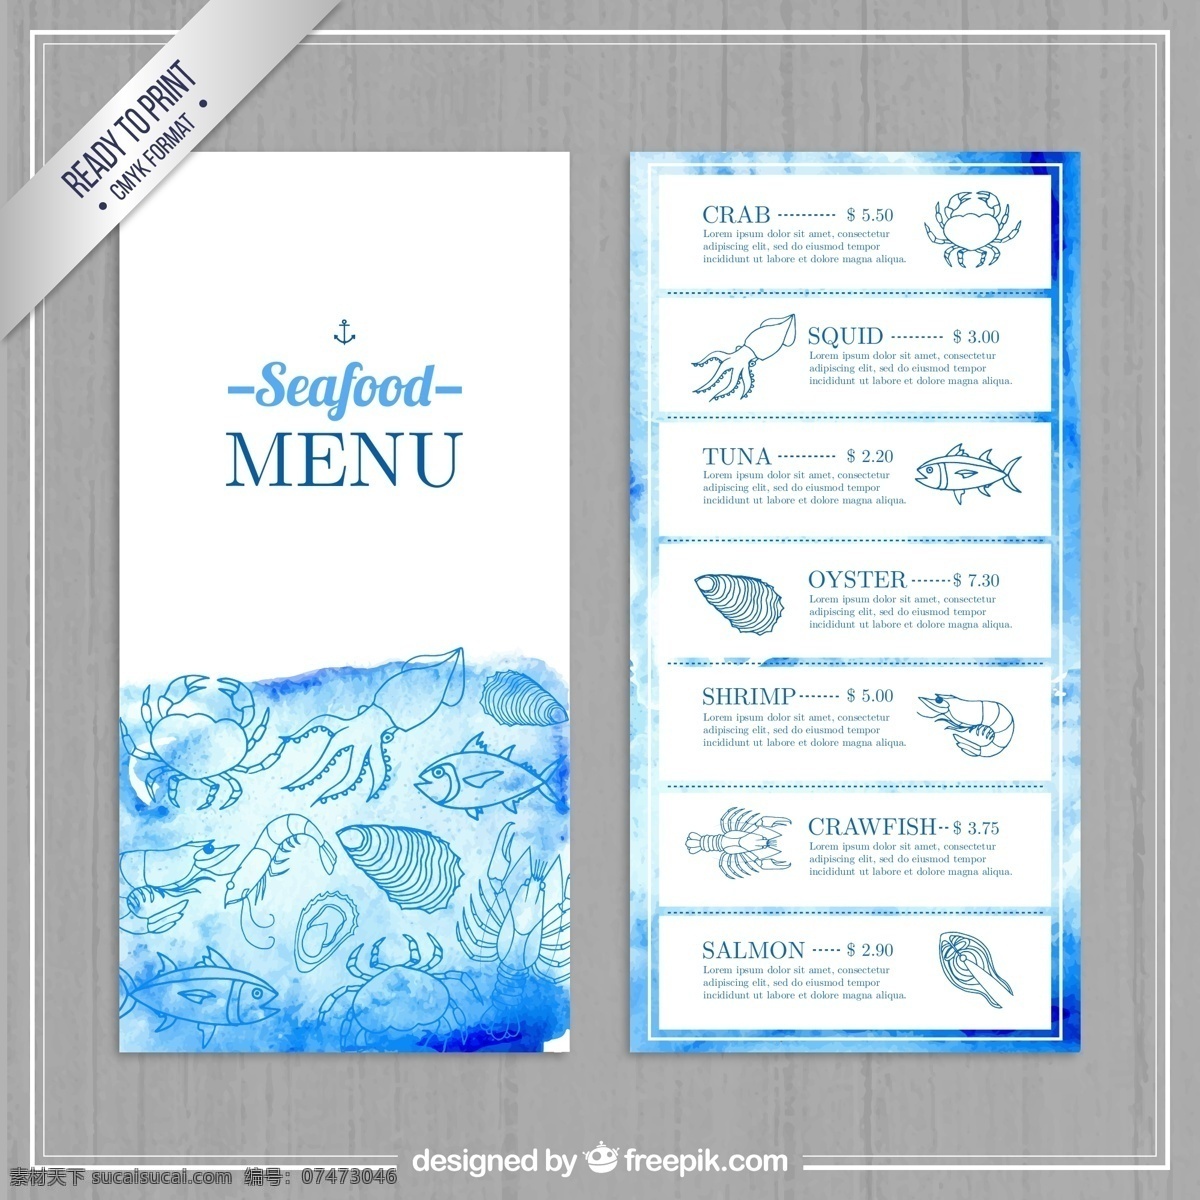 彩绘 蓝色 海鲜 店 菜单 矢量 鱿鱼 螃蟹 海螺 扇贝 鱼 龙虾 餐饮 虾 餐厅 海鲜店 木纹 矢量图